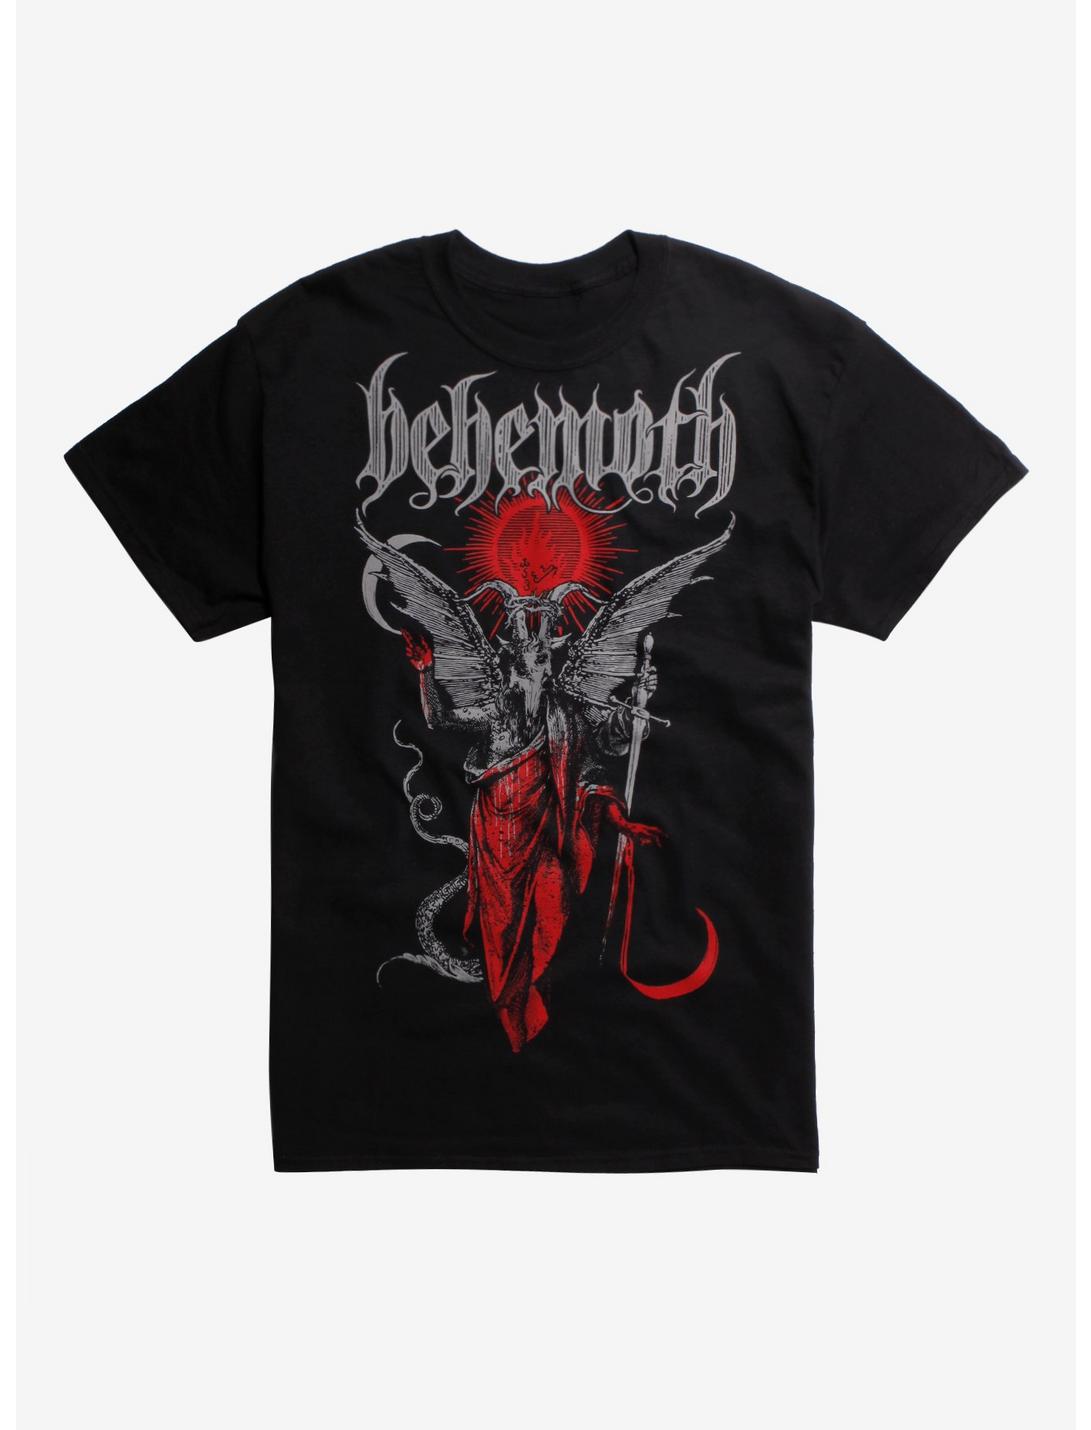 Behemoth Goat Demon T-Shirt, BLACK, hi-res